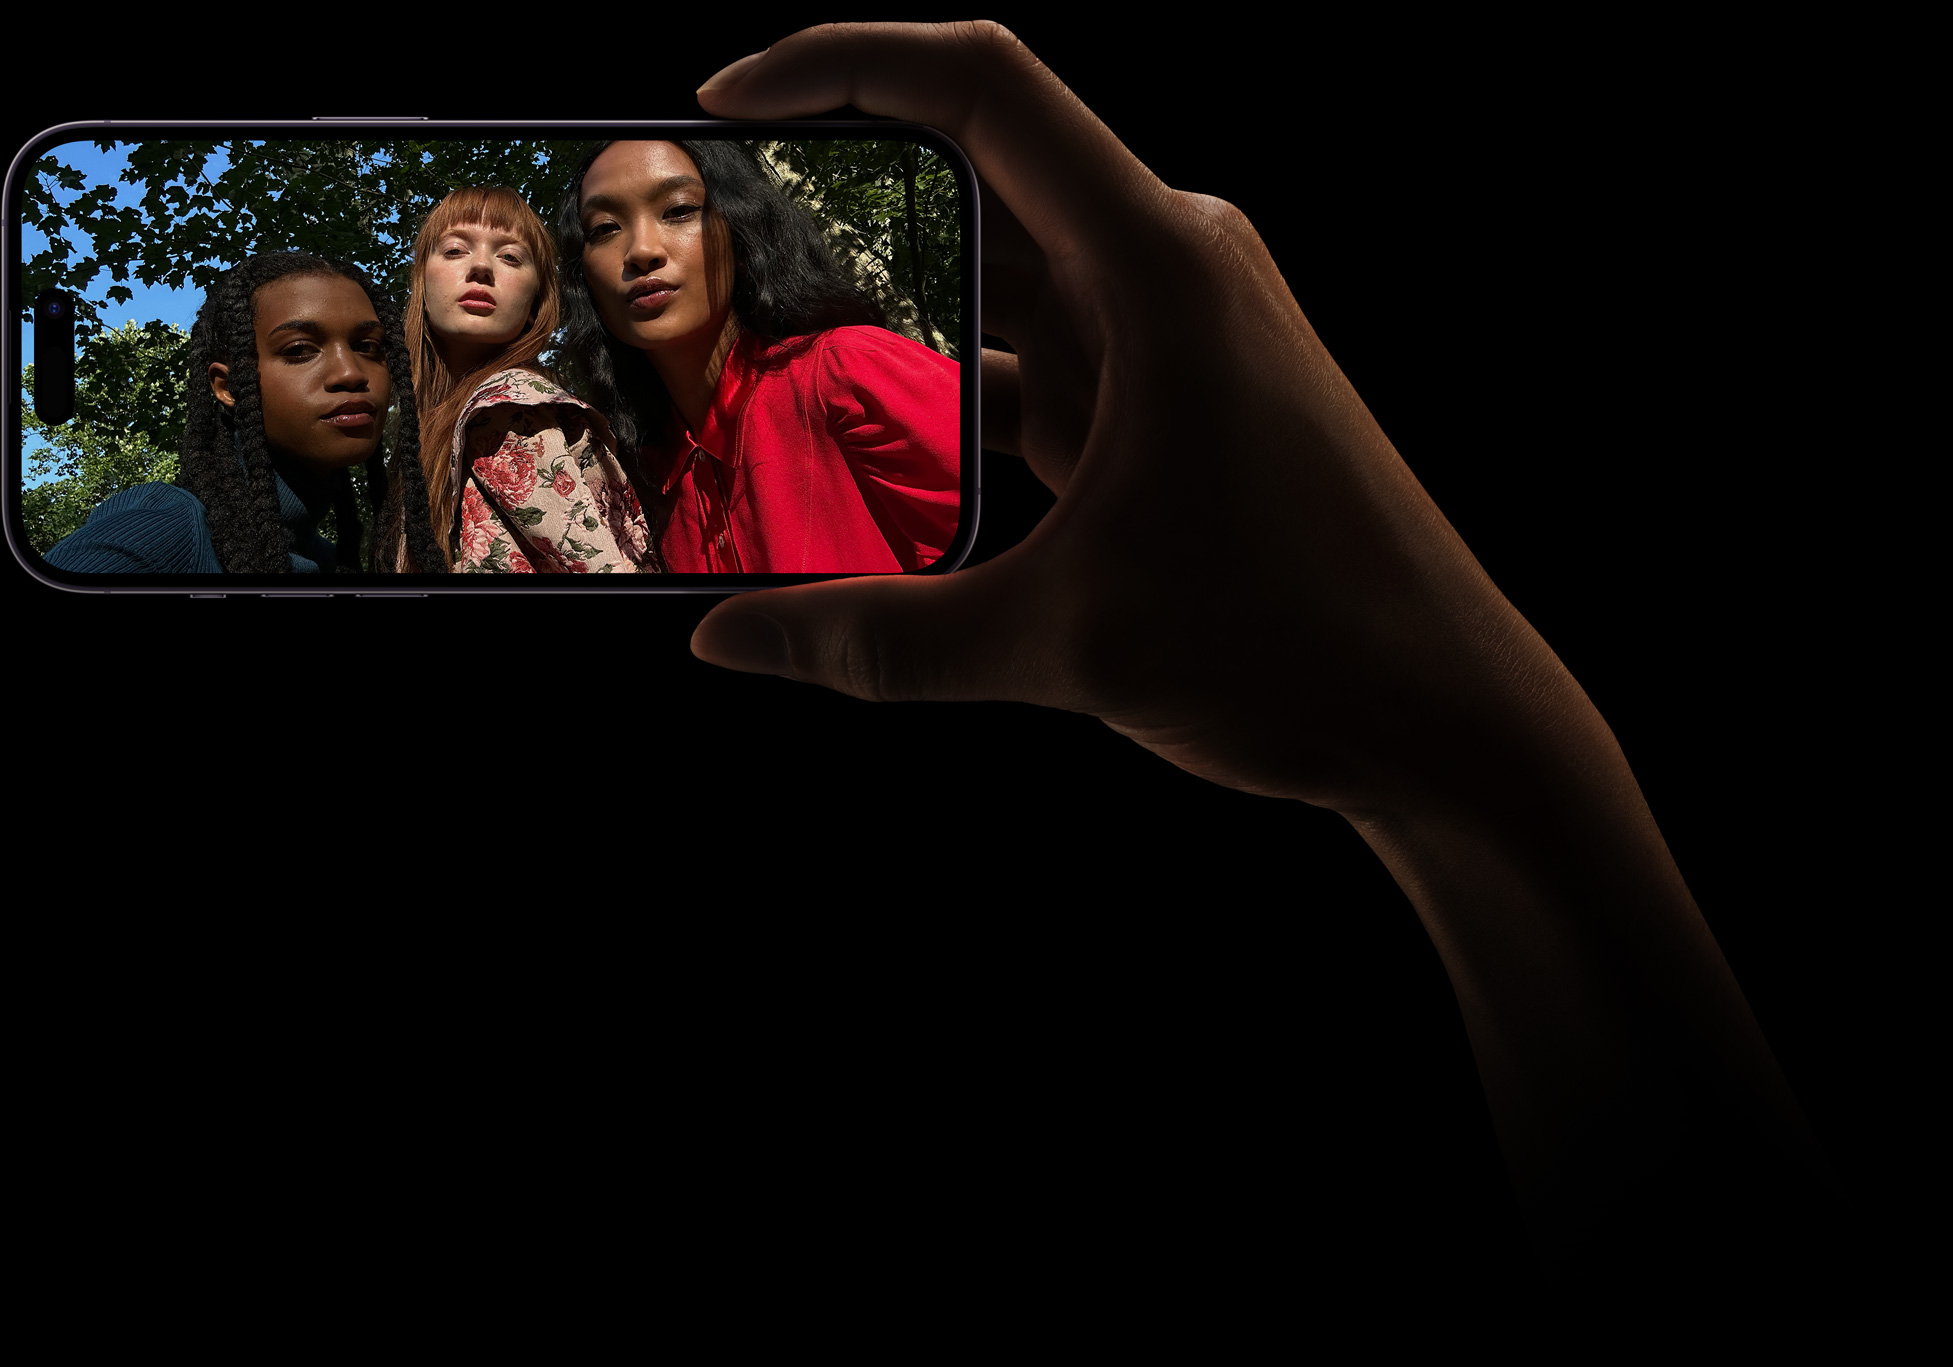 En gruppselfie med tre kvinnor som poserar. Bilden togs med TrueDepth-kameran.